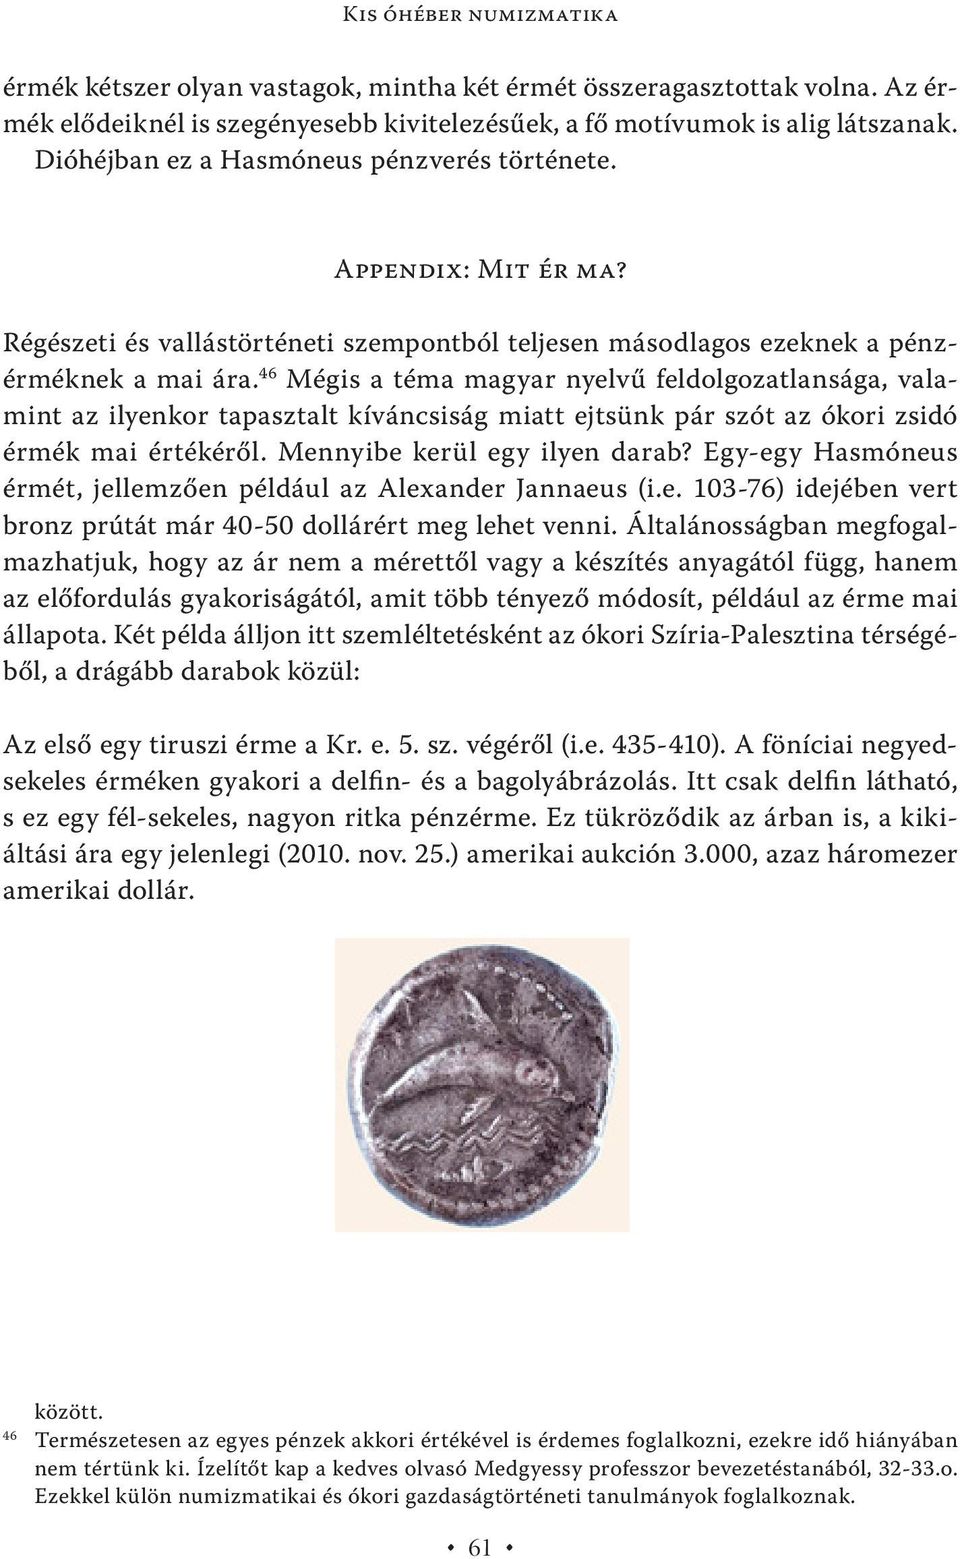 46 Mégis a téma magyar nyelvű feldolgozatlansága, valamint az ilyenkor tapasztalt kíváncsiság miatt ejtsünk pár szót az ókori zsidó érmék mai értékéről. Mennyibe kerül egy ilyen darab?